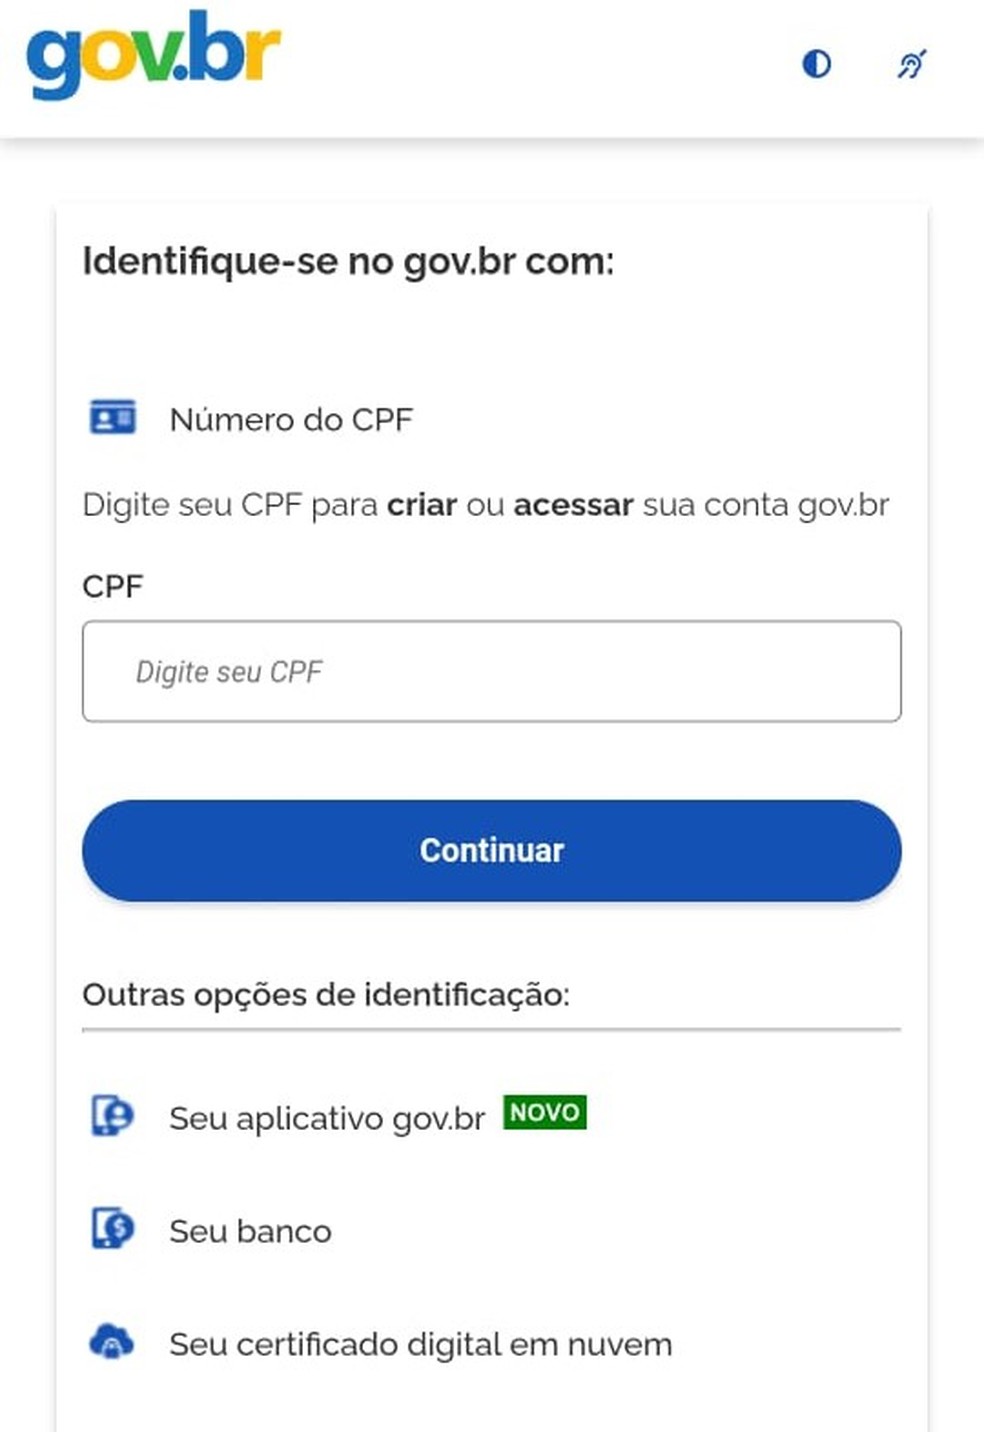 Conta gov.br dá acesso aos serviços digitais do governo  — Foto: Reprodução